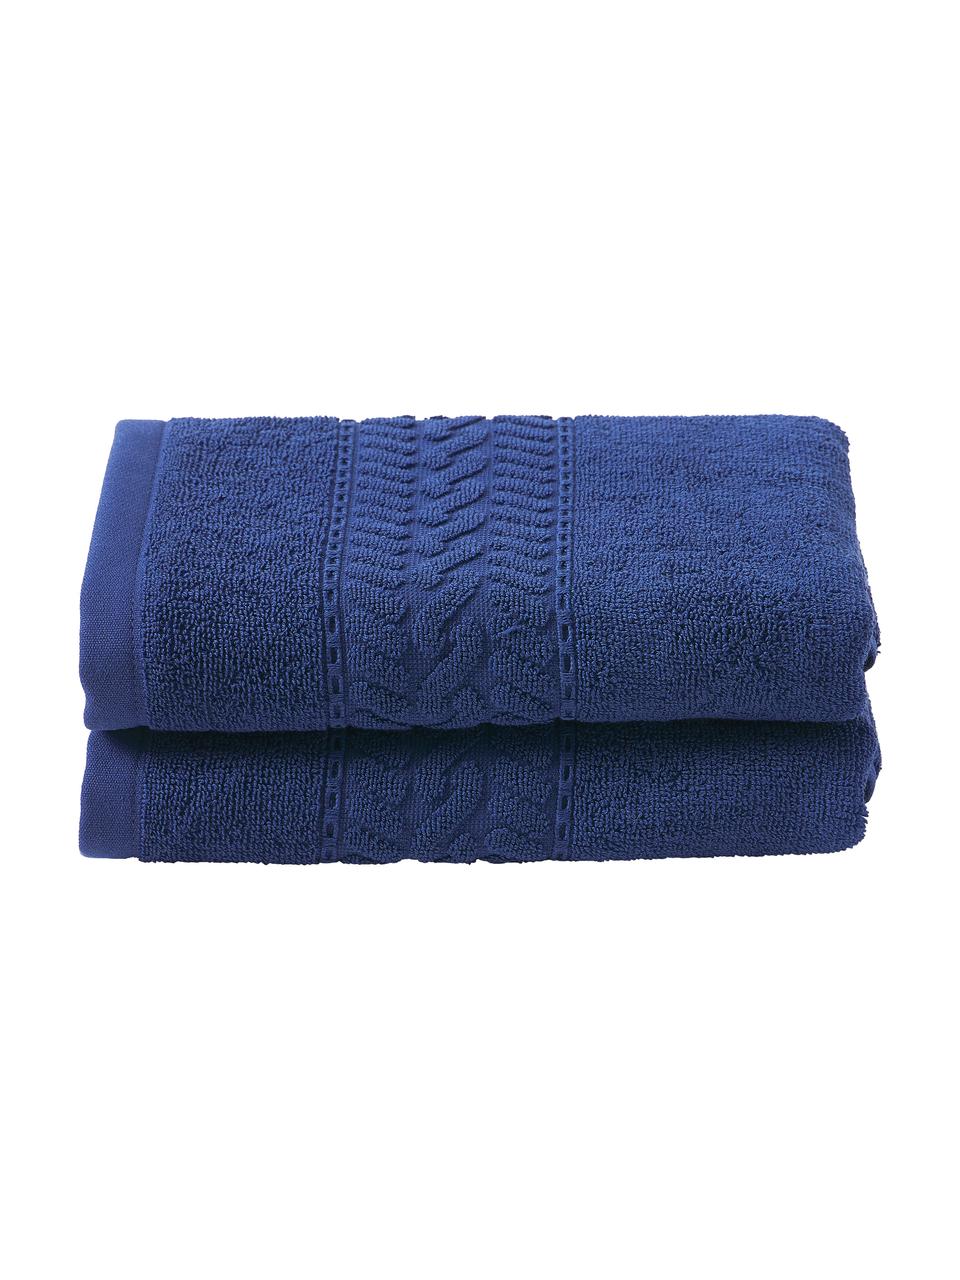 Toallas lavabos Cordelia, tamaños diferentes, Azul oscuro, Toalla ducha, An 70 x L 140 cm